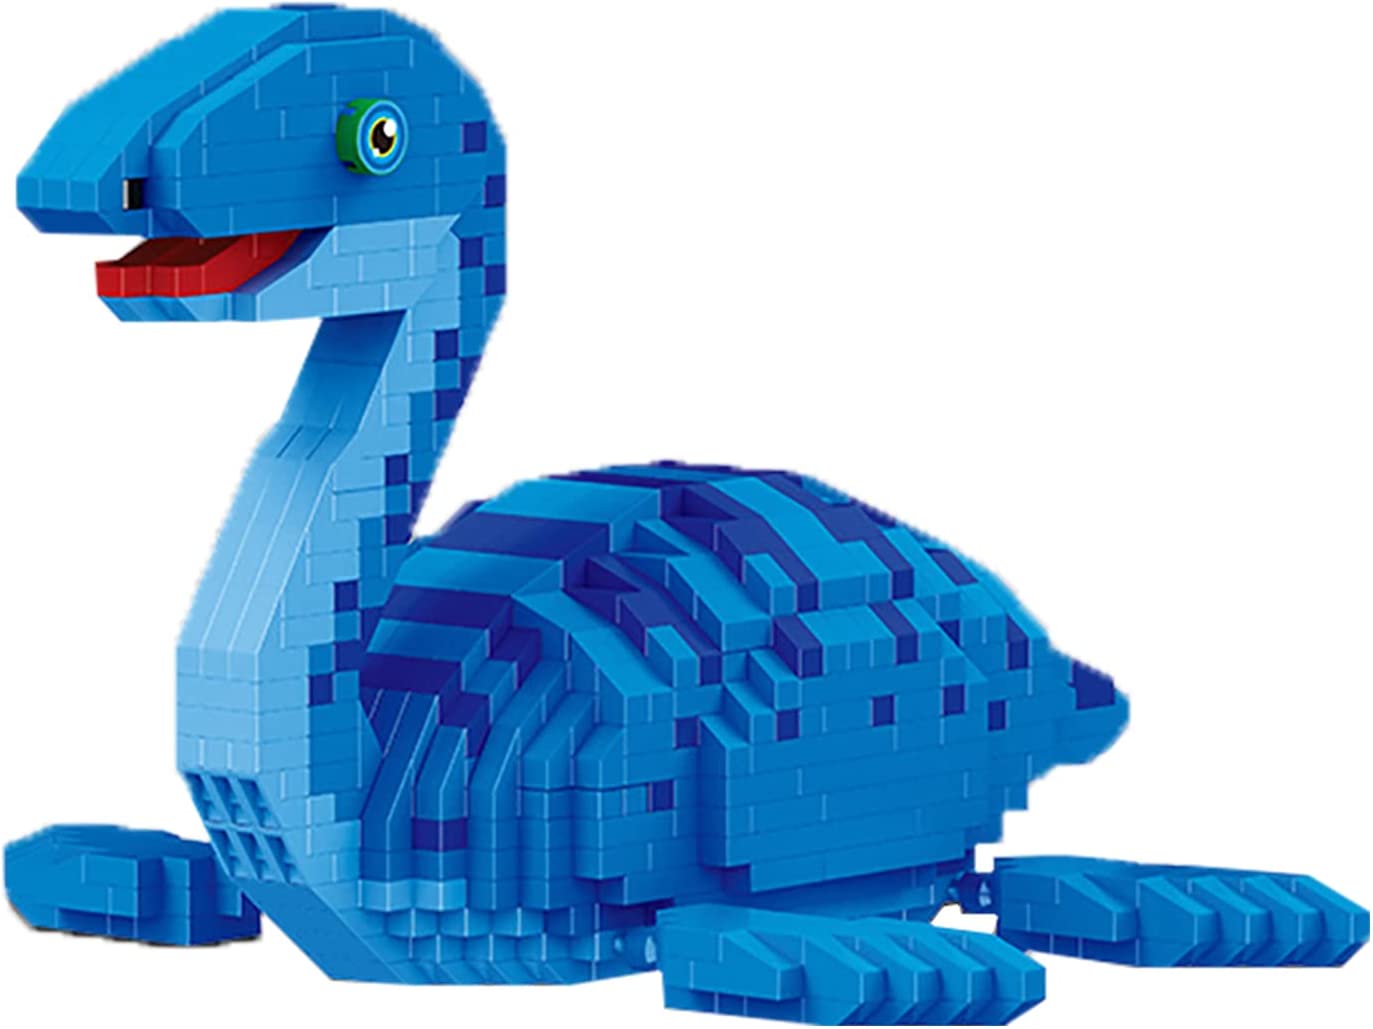 Конструктор Balody 3D из миниблоков Динозавр Плезиозавр, 1004 элементов BA18403 конструктор 3d из миниблоков balody цапли в саду 3666 элементов ba16291